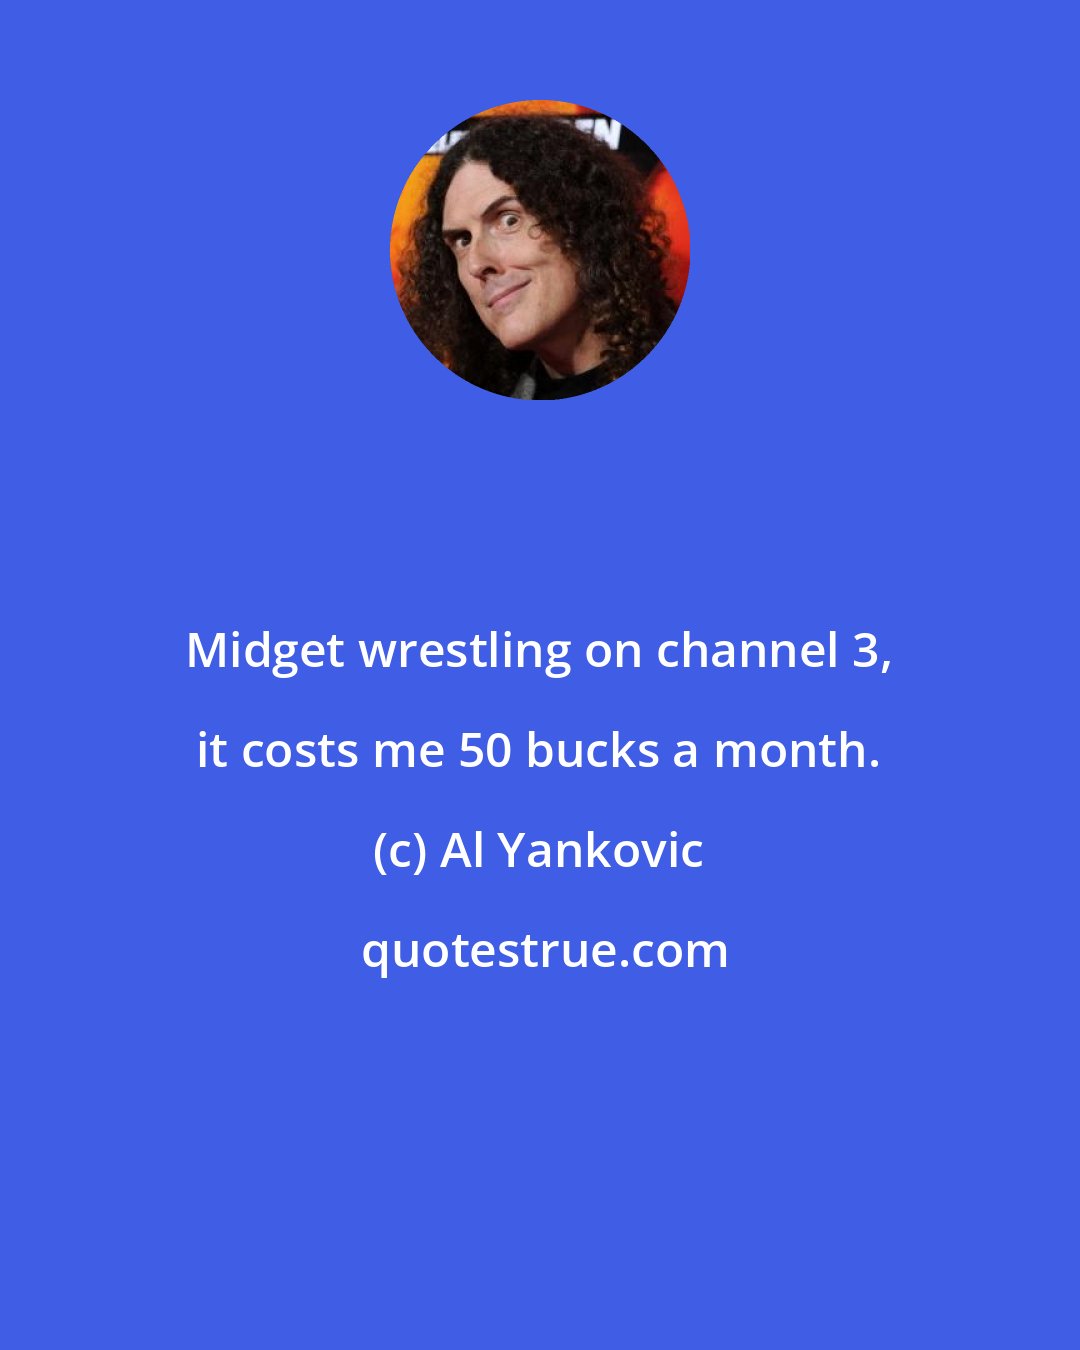 Al Yankovic: Midget wrestling on channel 3, it costs me 50 bucks a month.